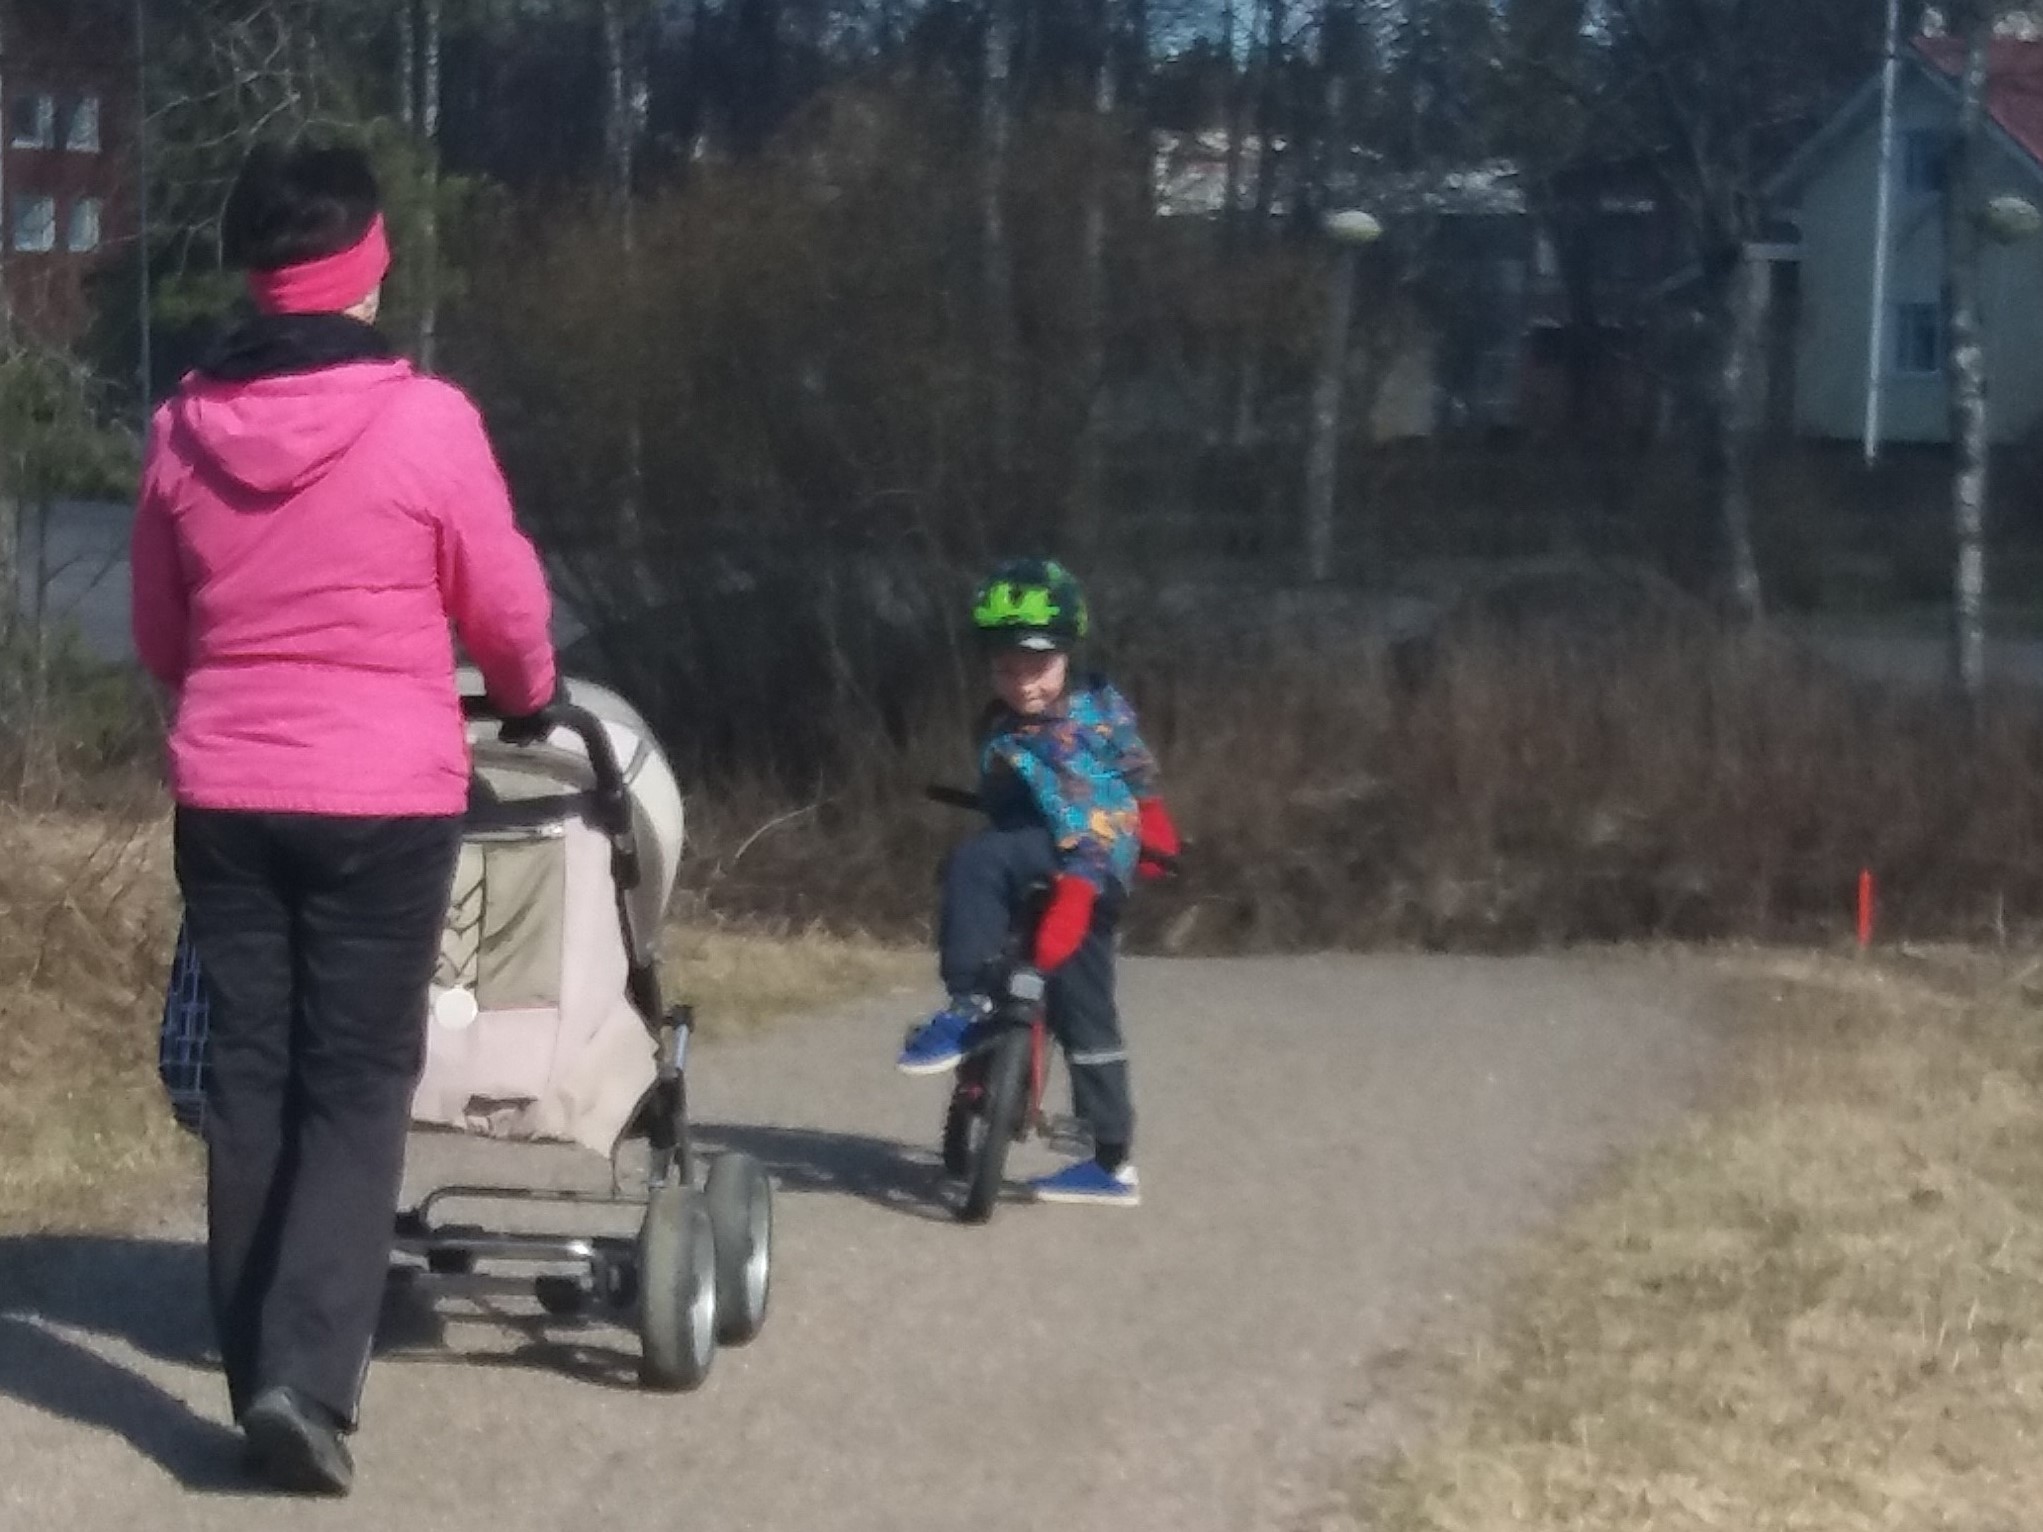 "Nainen työntää lastenvaunuja. Leikki-ikäinen lapsi odottaa pyörän kanssa edellä."